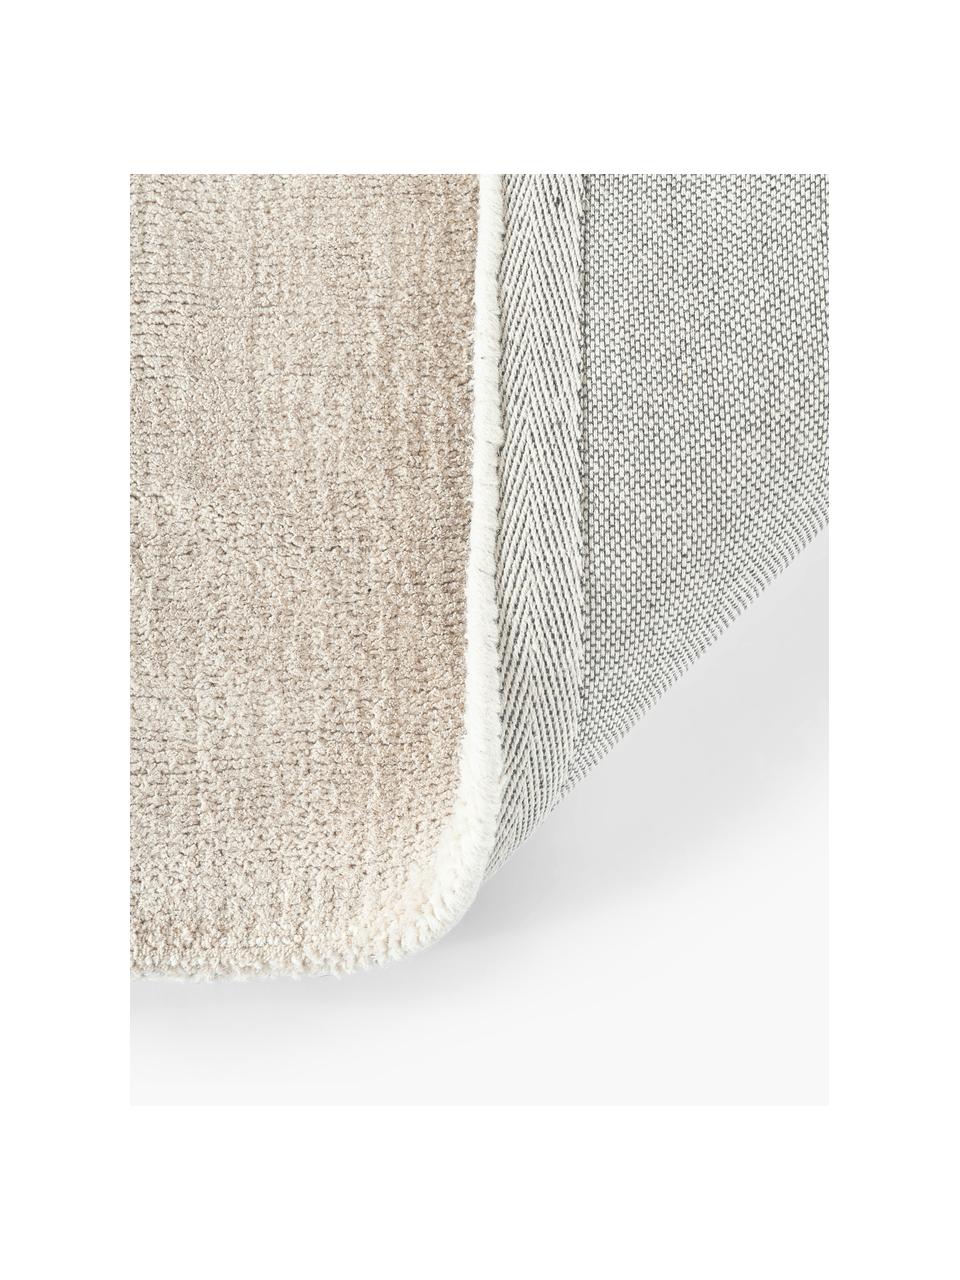 Ručně tkaný běhoun s nízkým vlasem Ainsley, 60 % polyester, certifikace GRS
40 % vlna, Béžová, Š 80 cm, D 200 cm